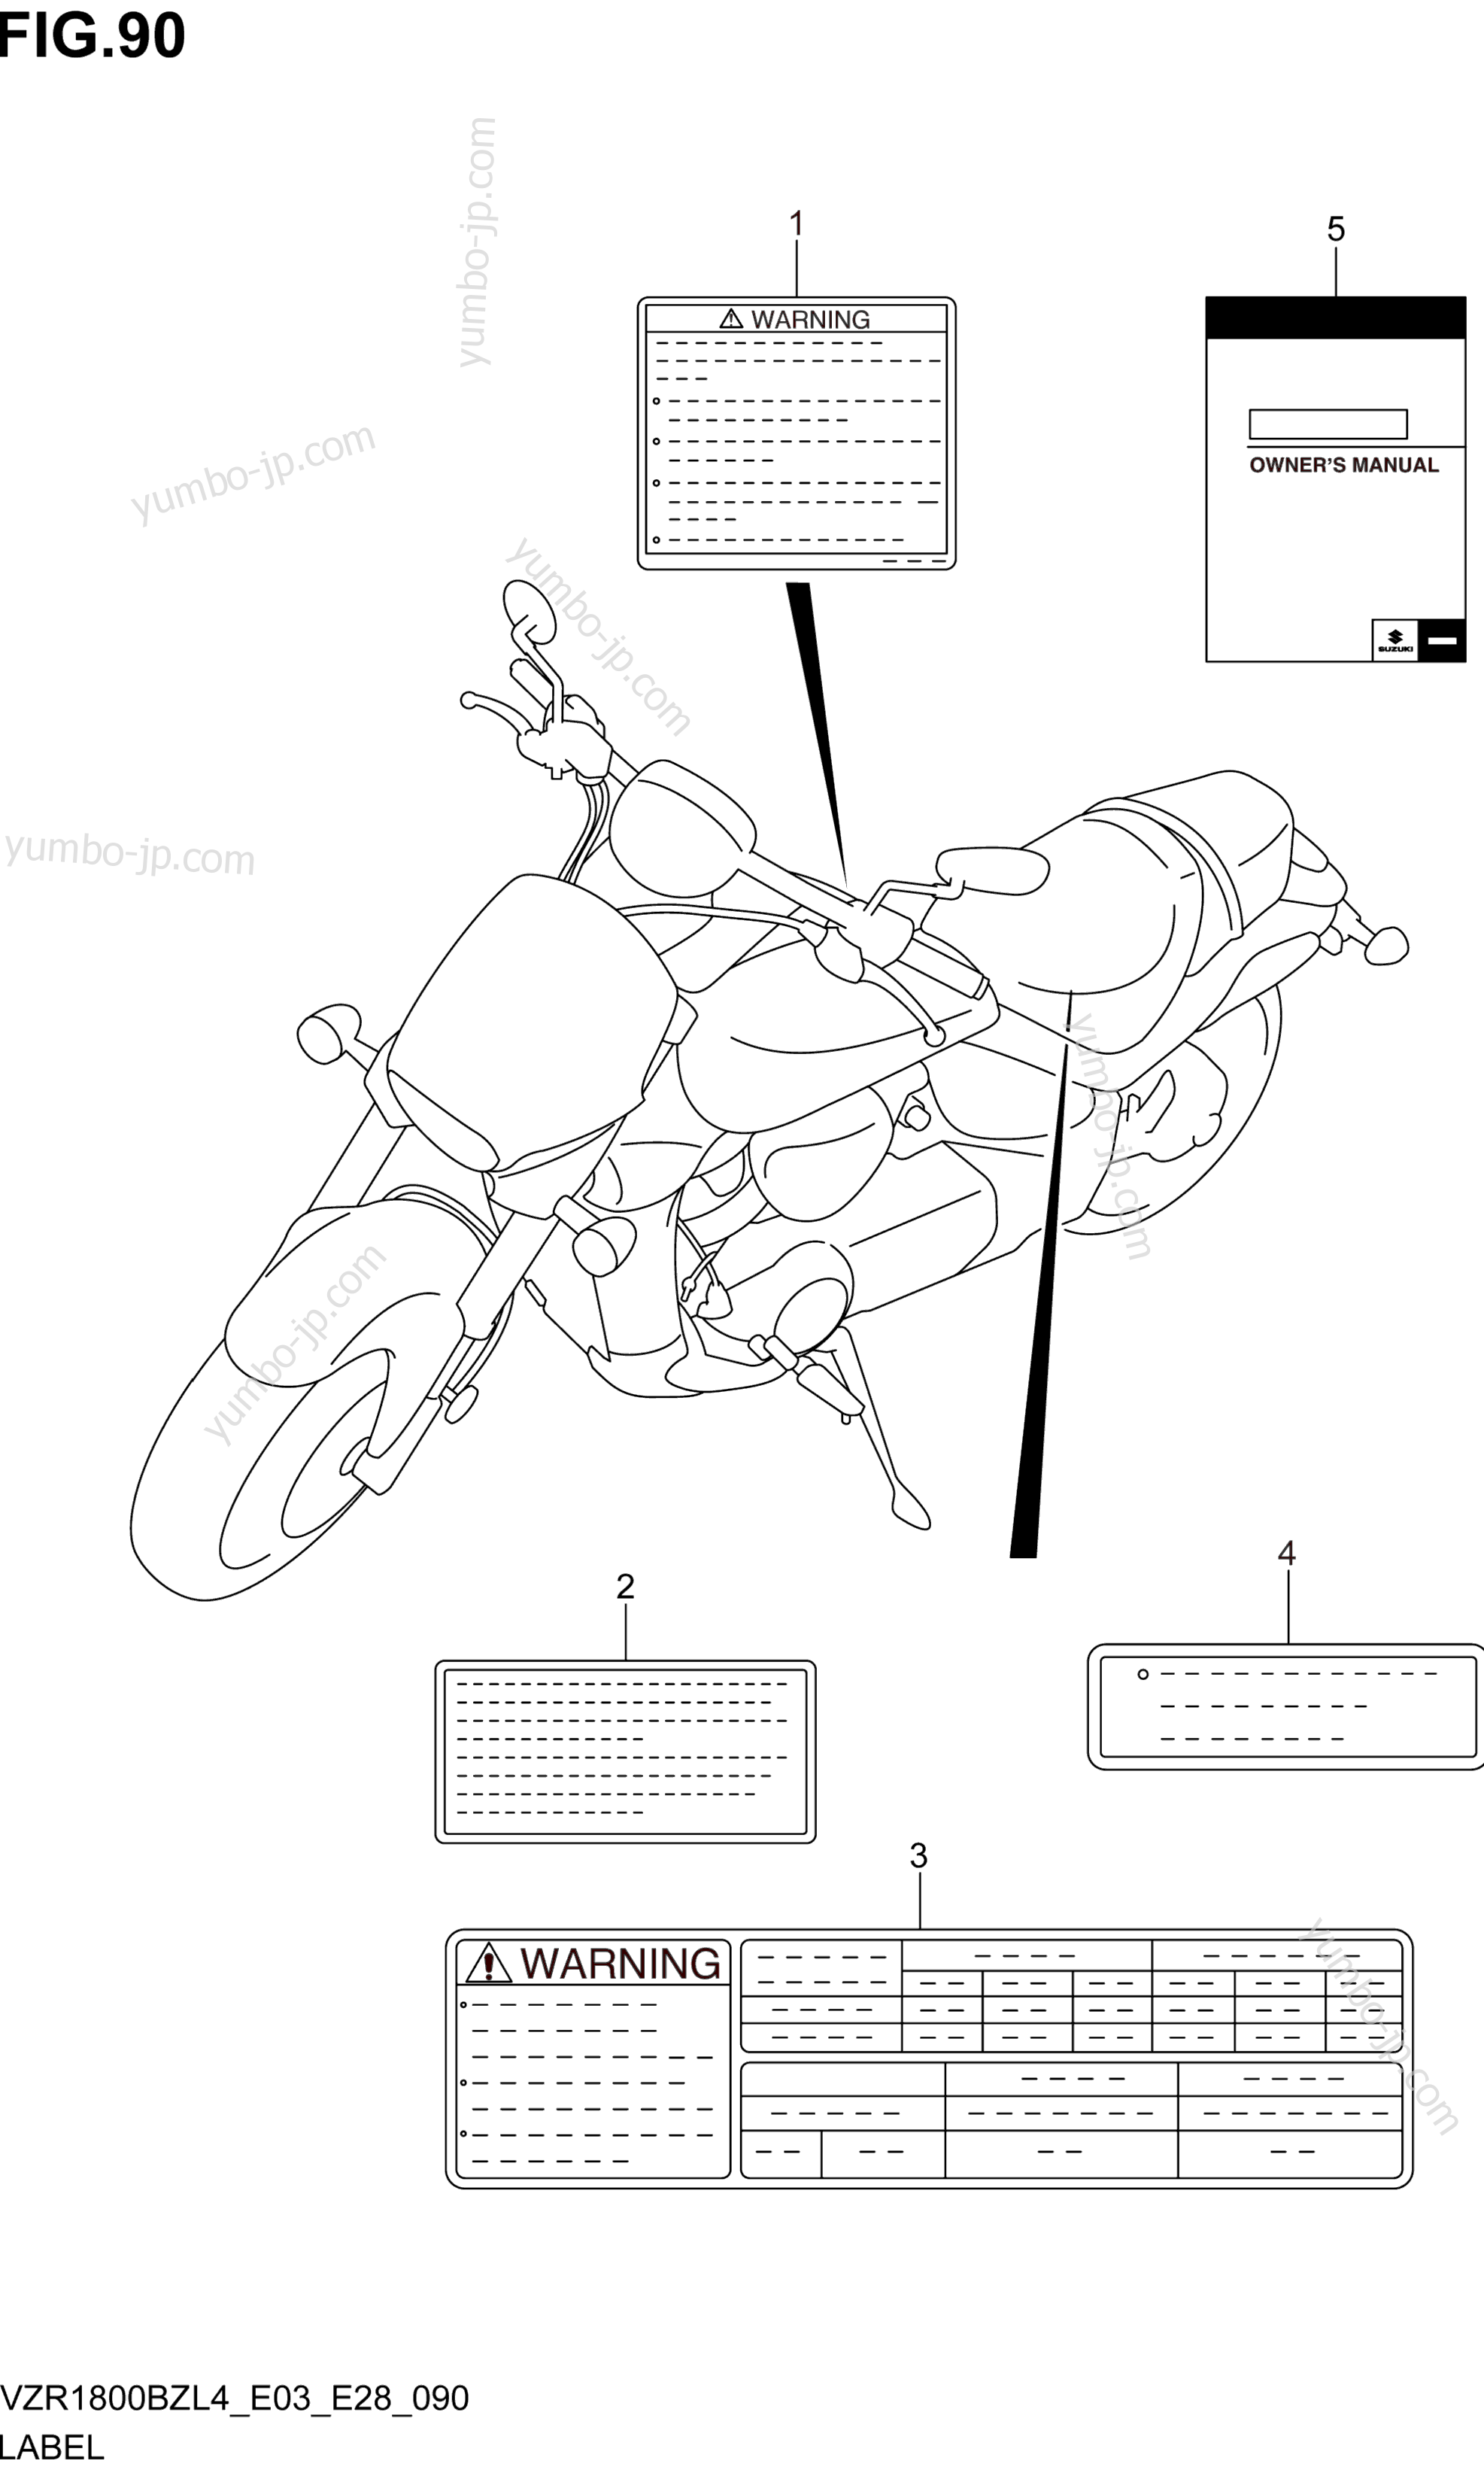 LABEL (VZR1800BZL4 E03) for motorcycles SUZUKI VZR1800BZ 2014 year